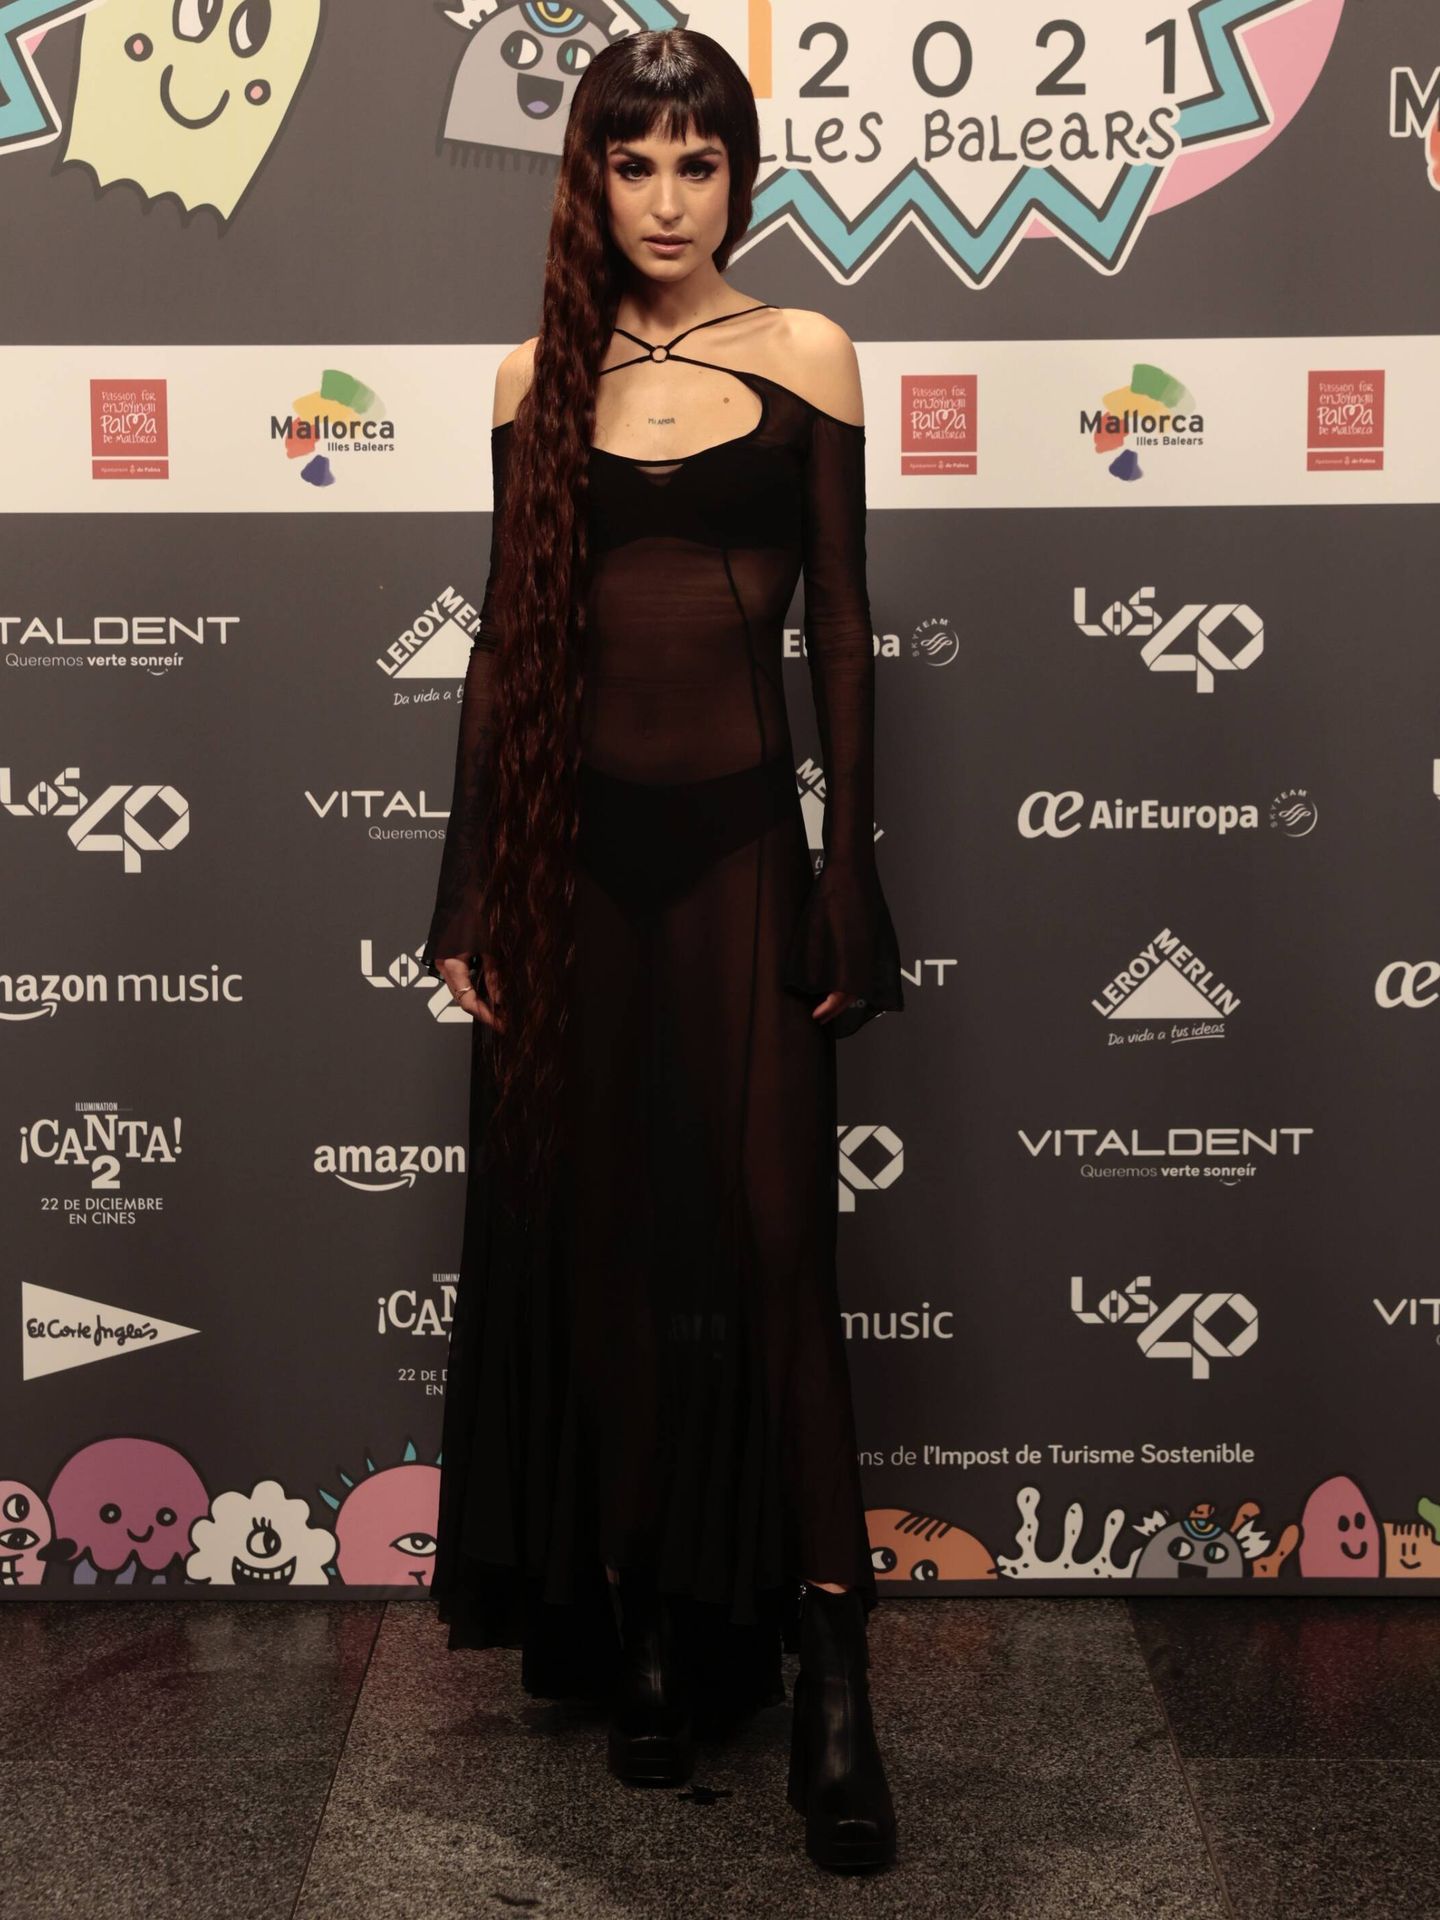 Natalia Lacunza en la alfombra roja de LOS40 Music Awards 2021. (Cortesía SERComunicación)